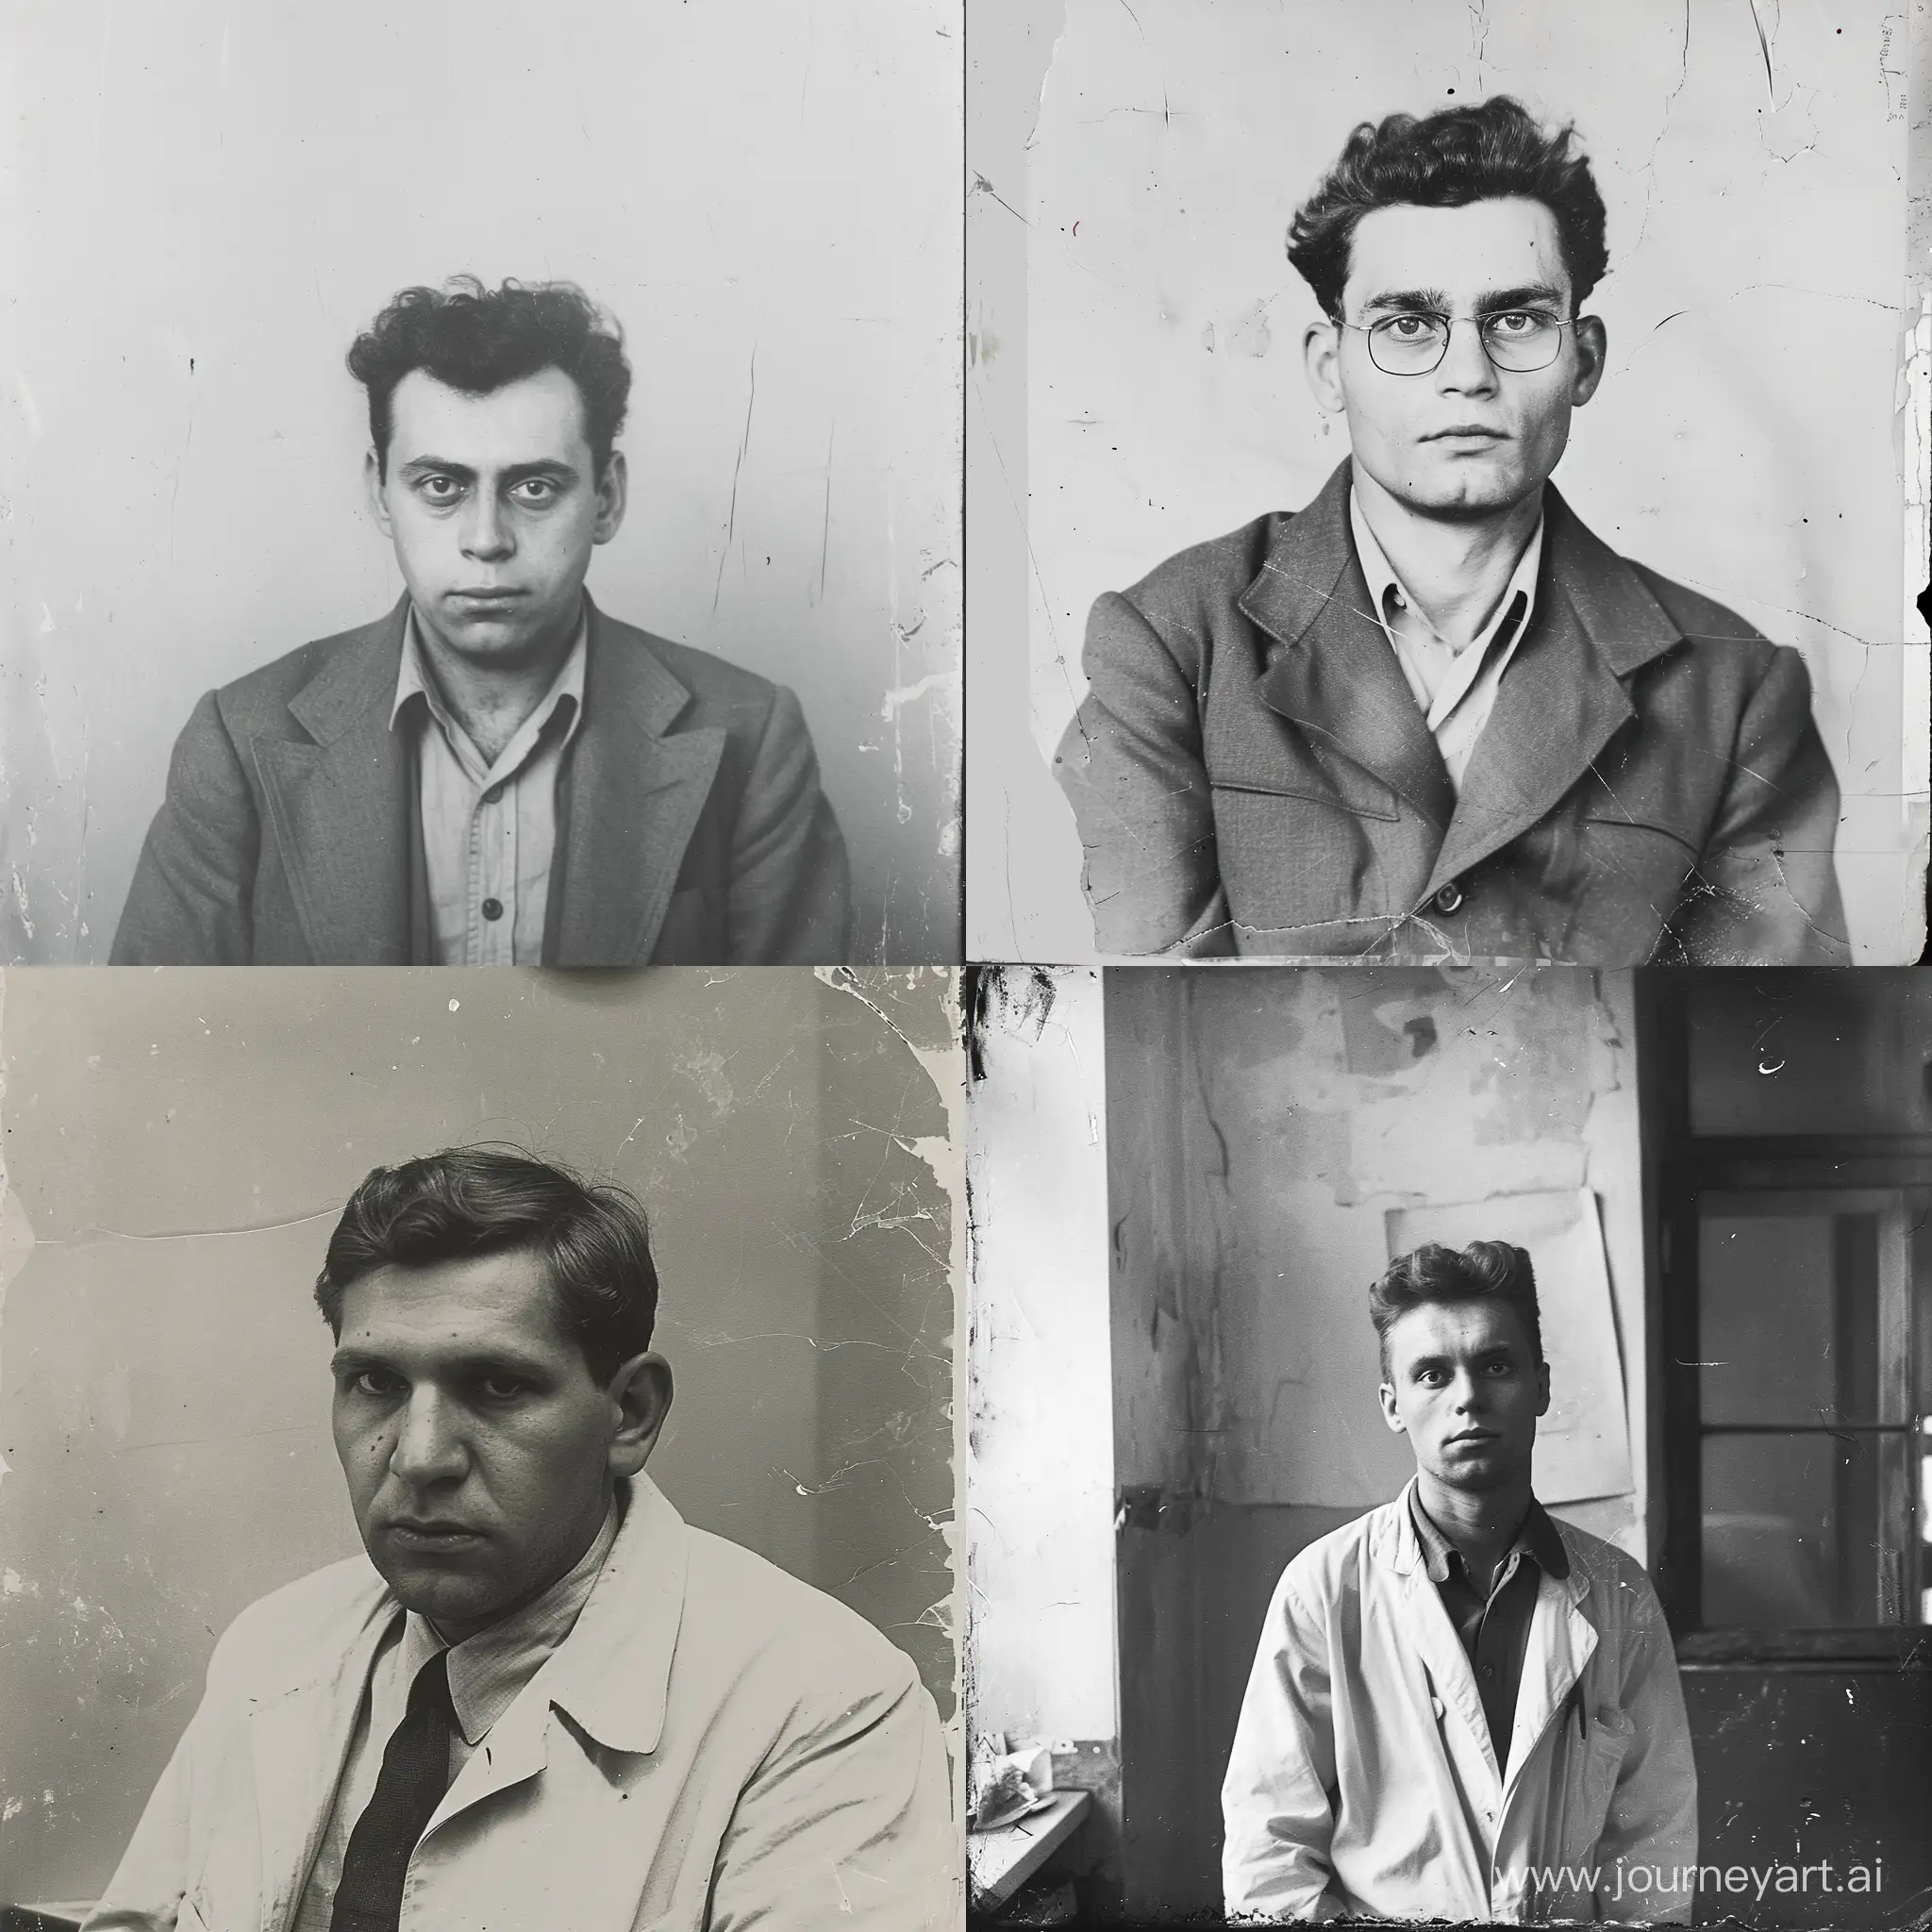 Ivan-Bulsheit-Last-Surviving-Photo-of-Russian-Researcher-in-1951